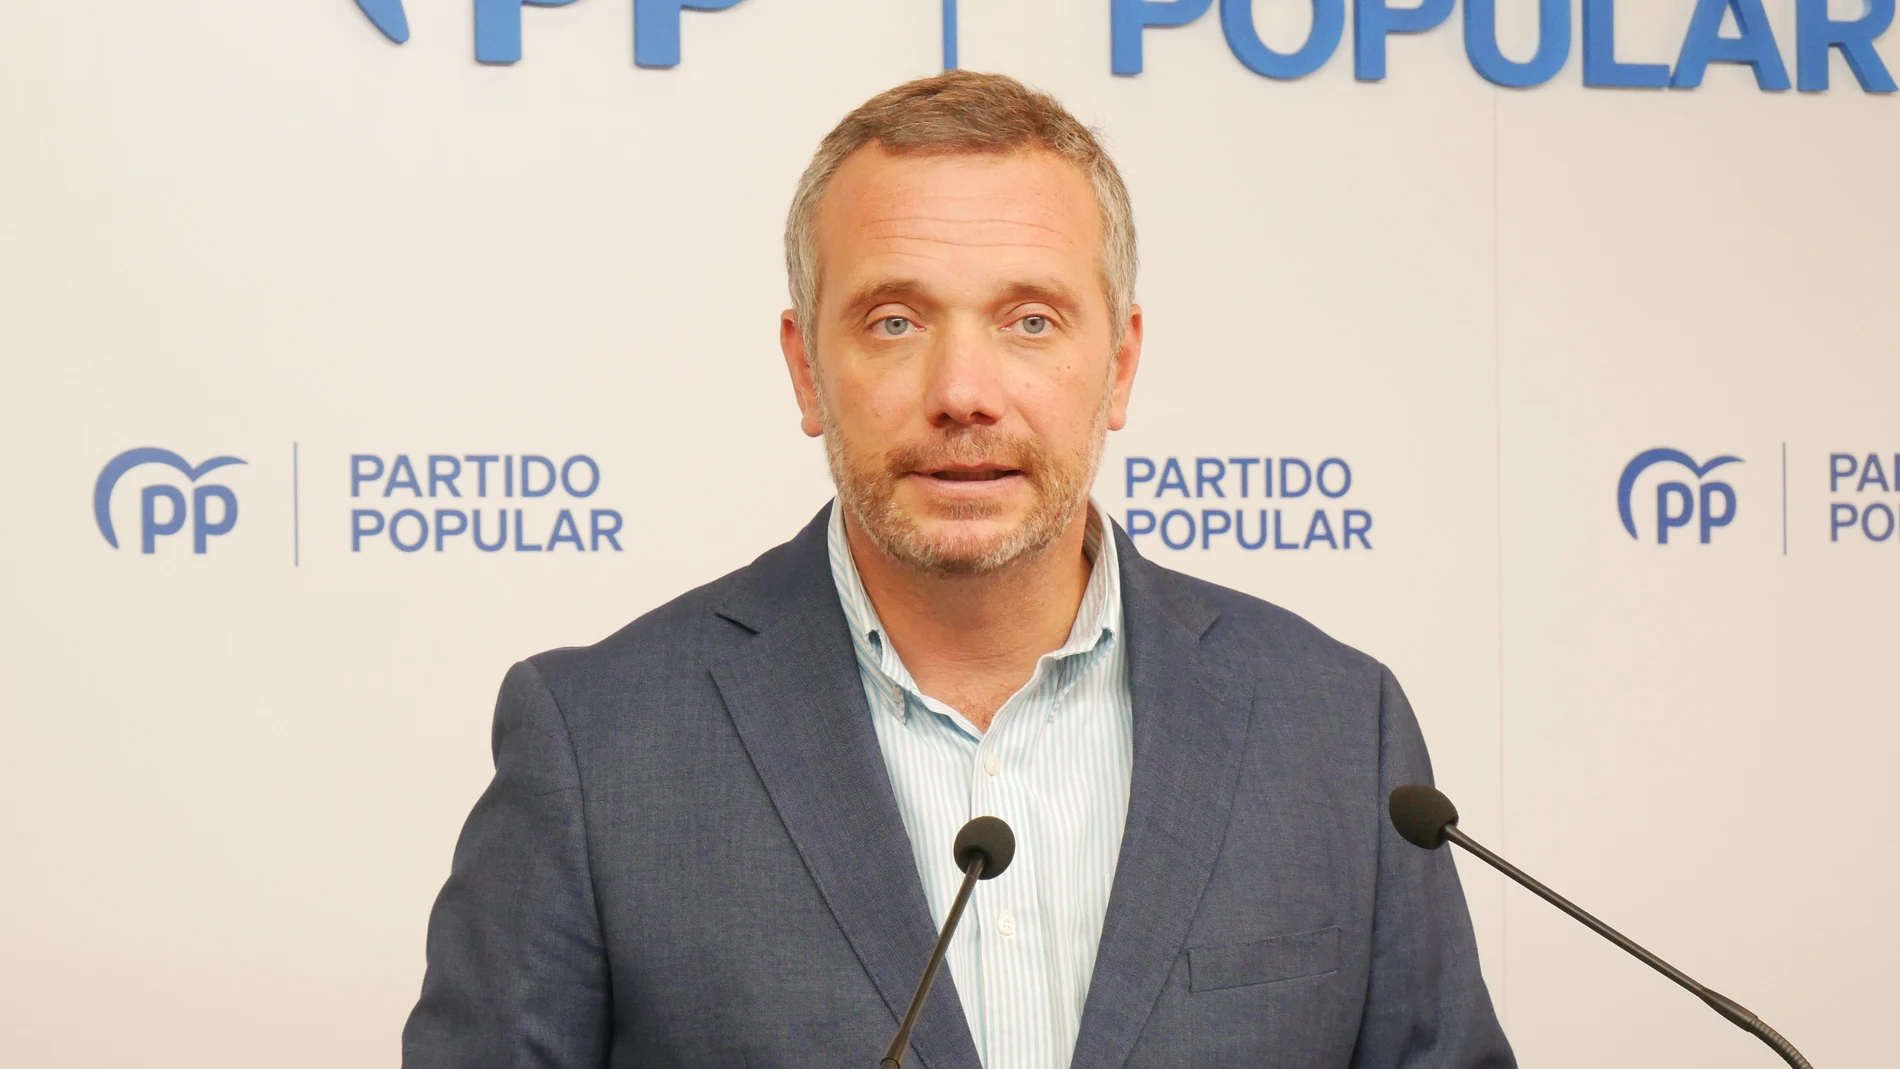 El portavoz del Partido Popular en la Asamblea Regional, Joaquín Segado